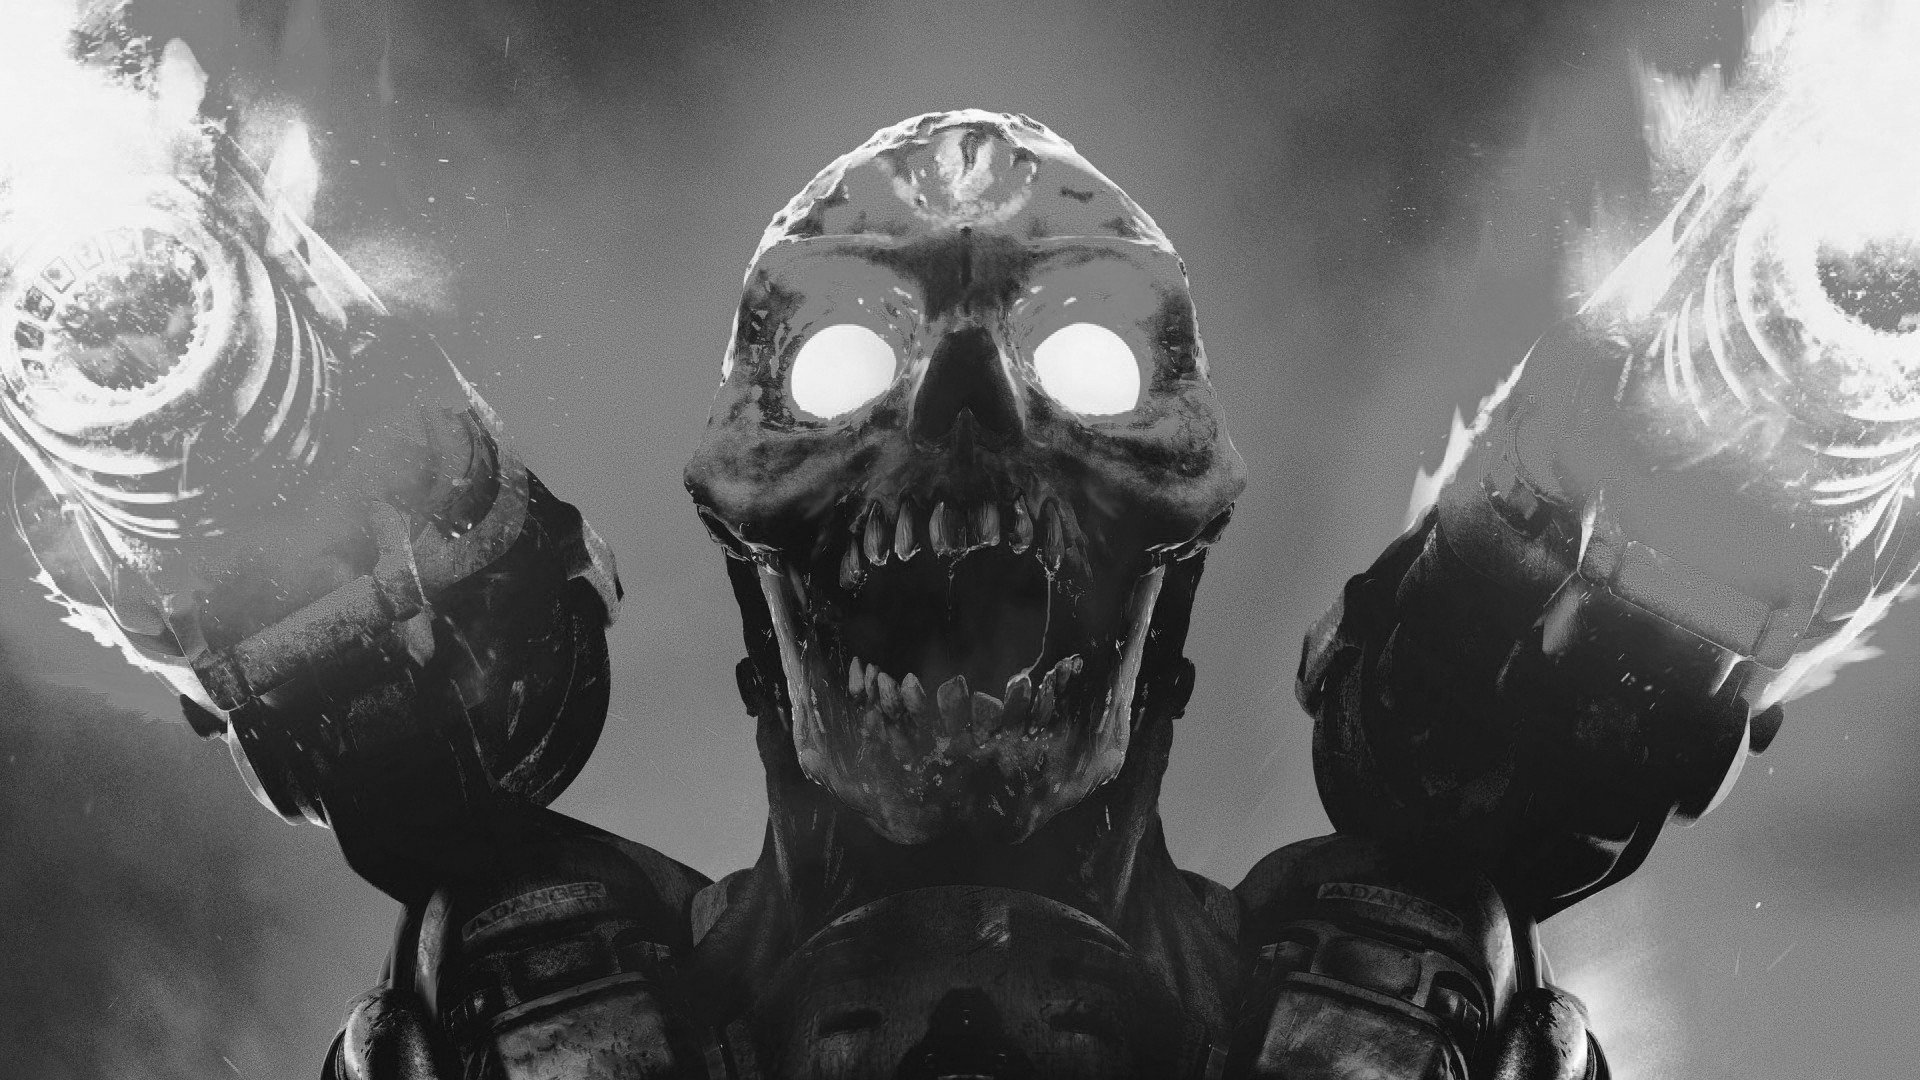 Doom (game), Video games, Monochrome, Skull, Doom 2016 Wallpaper